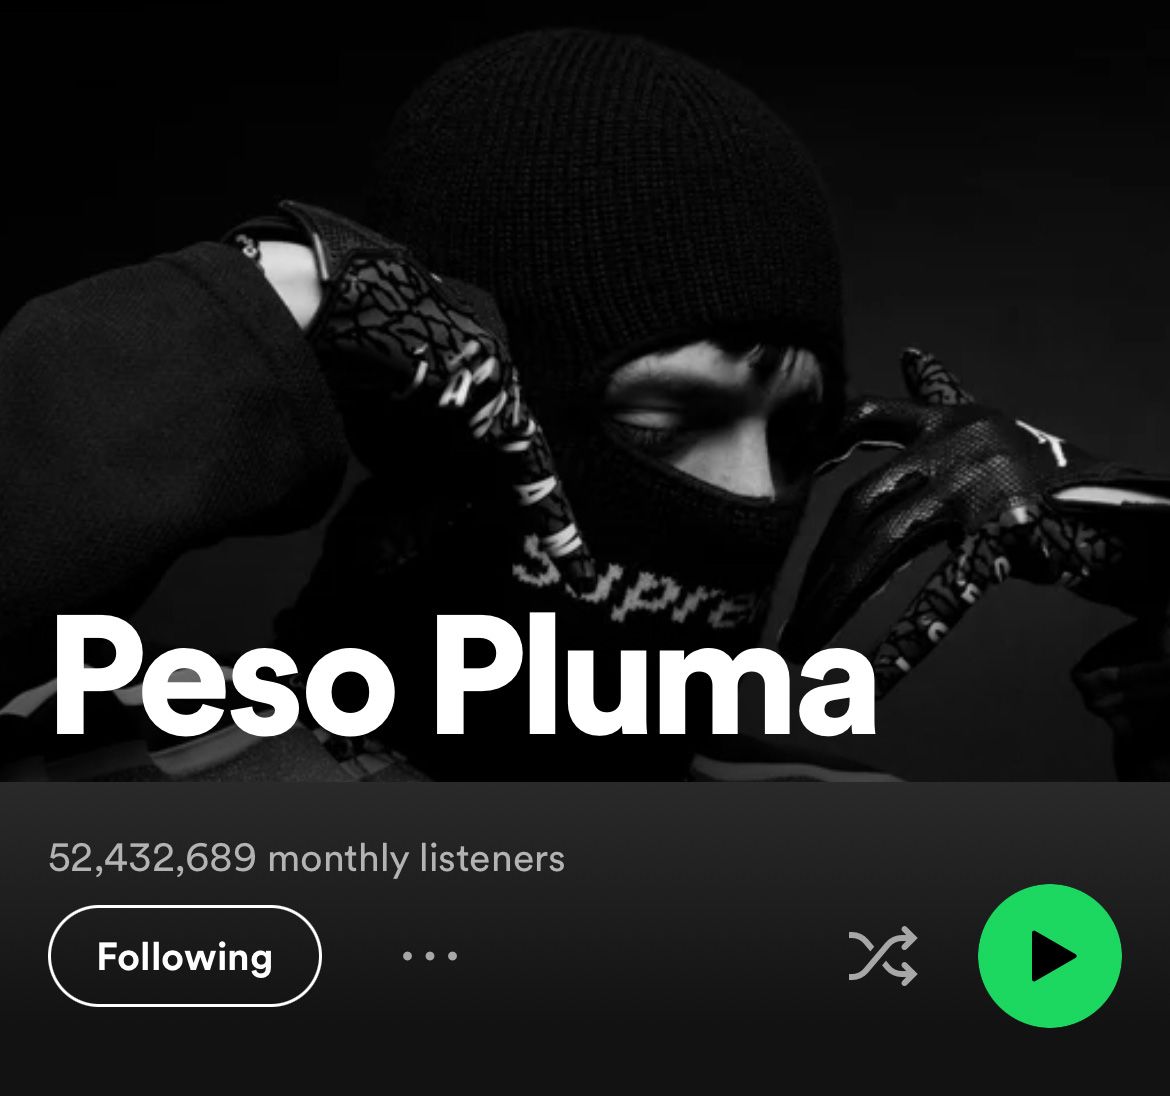 Comment Peso Pluma a-t-il atteint les 50 millions d'auditeurs mensuels ?